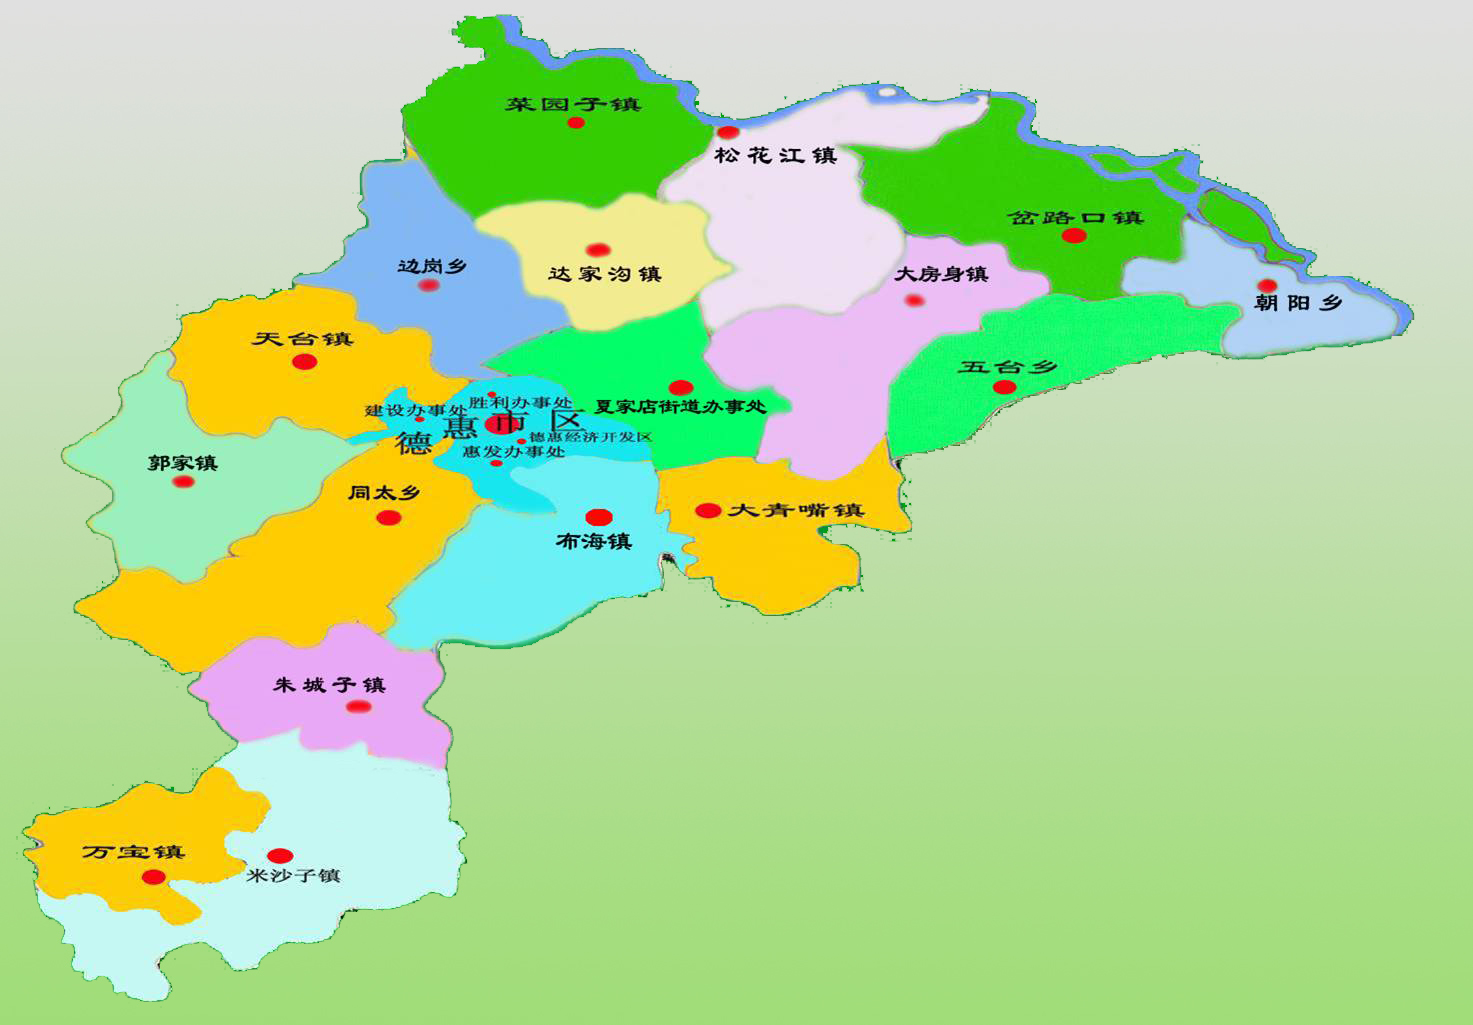 安岳县地图|安岳县地图全图高清版大图片|旅途风景图片网|www.visacits.com